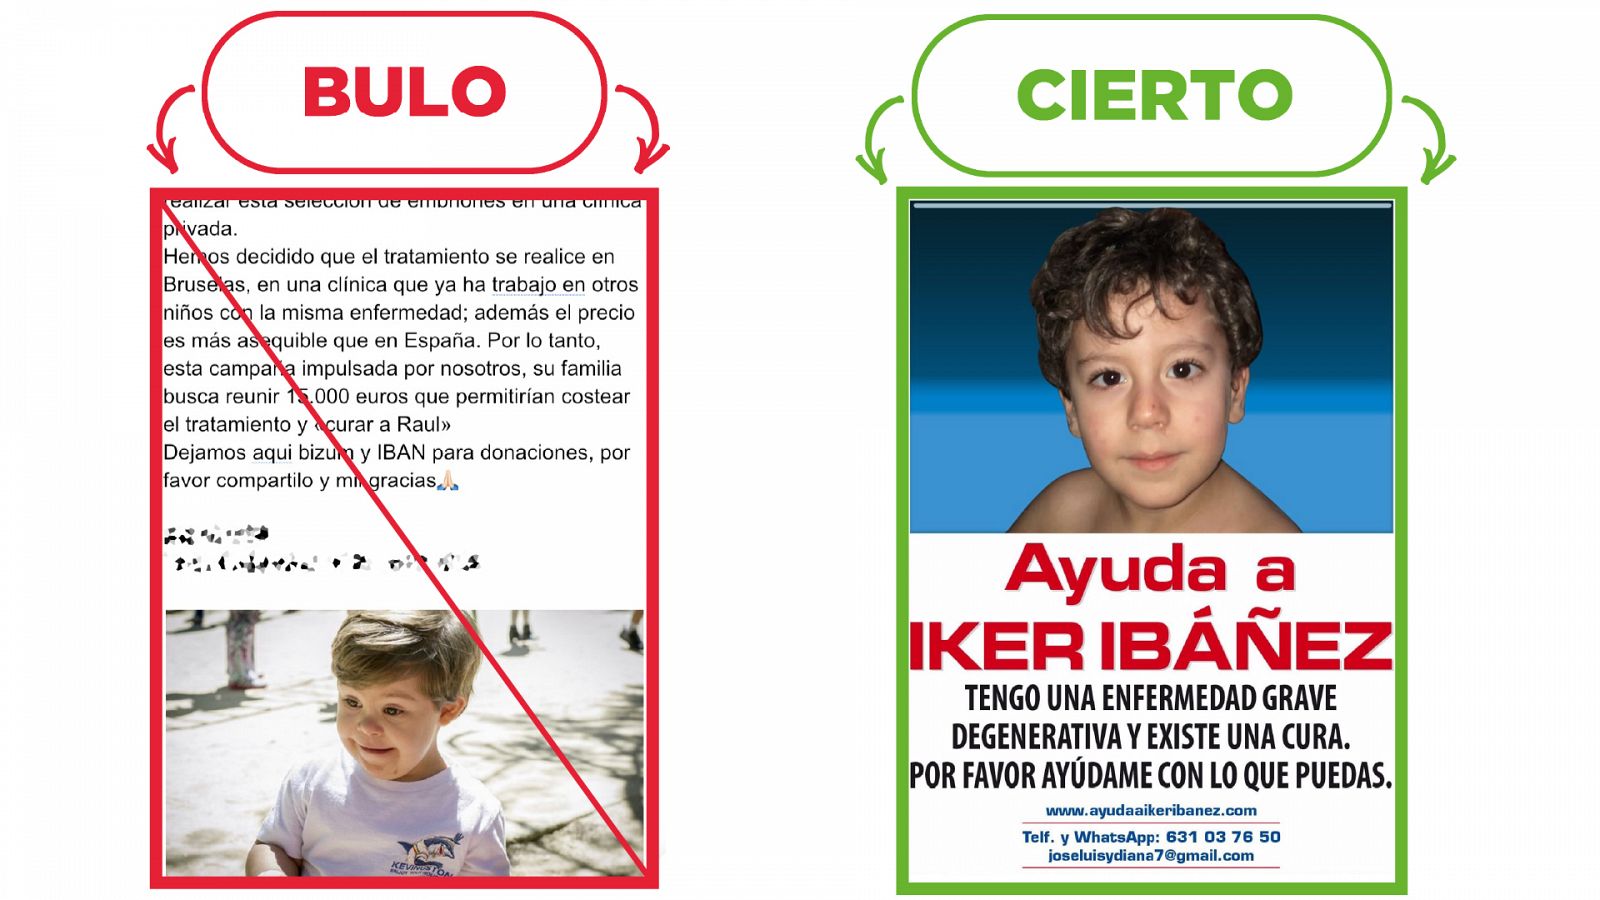 A la izquierda, el mensaje que sobre el falso caso de Raúl, en rojo y tachado, con el sello Bulo. A la derecha, el caso real del niño Iker Ibáñez, con el sello Cierto.